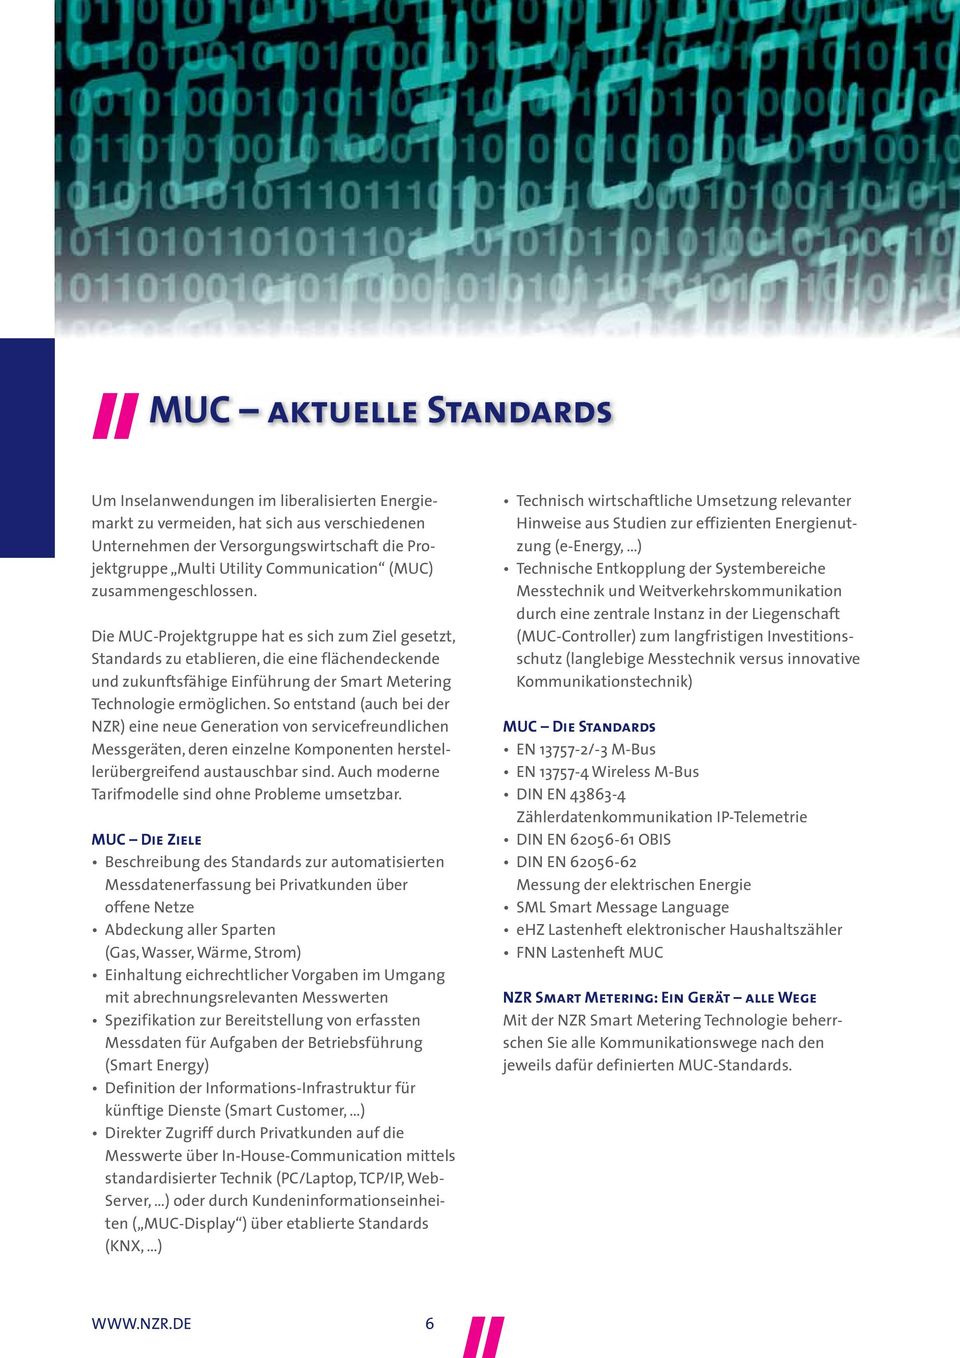 Die MUC-Projektgruppe hat es sich zum Ziel gesetzt, Standards zu etablieren, die eine flächendeckende und zukunftsfähige Einführung der Smart Metering Technologie ermöglichen.